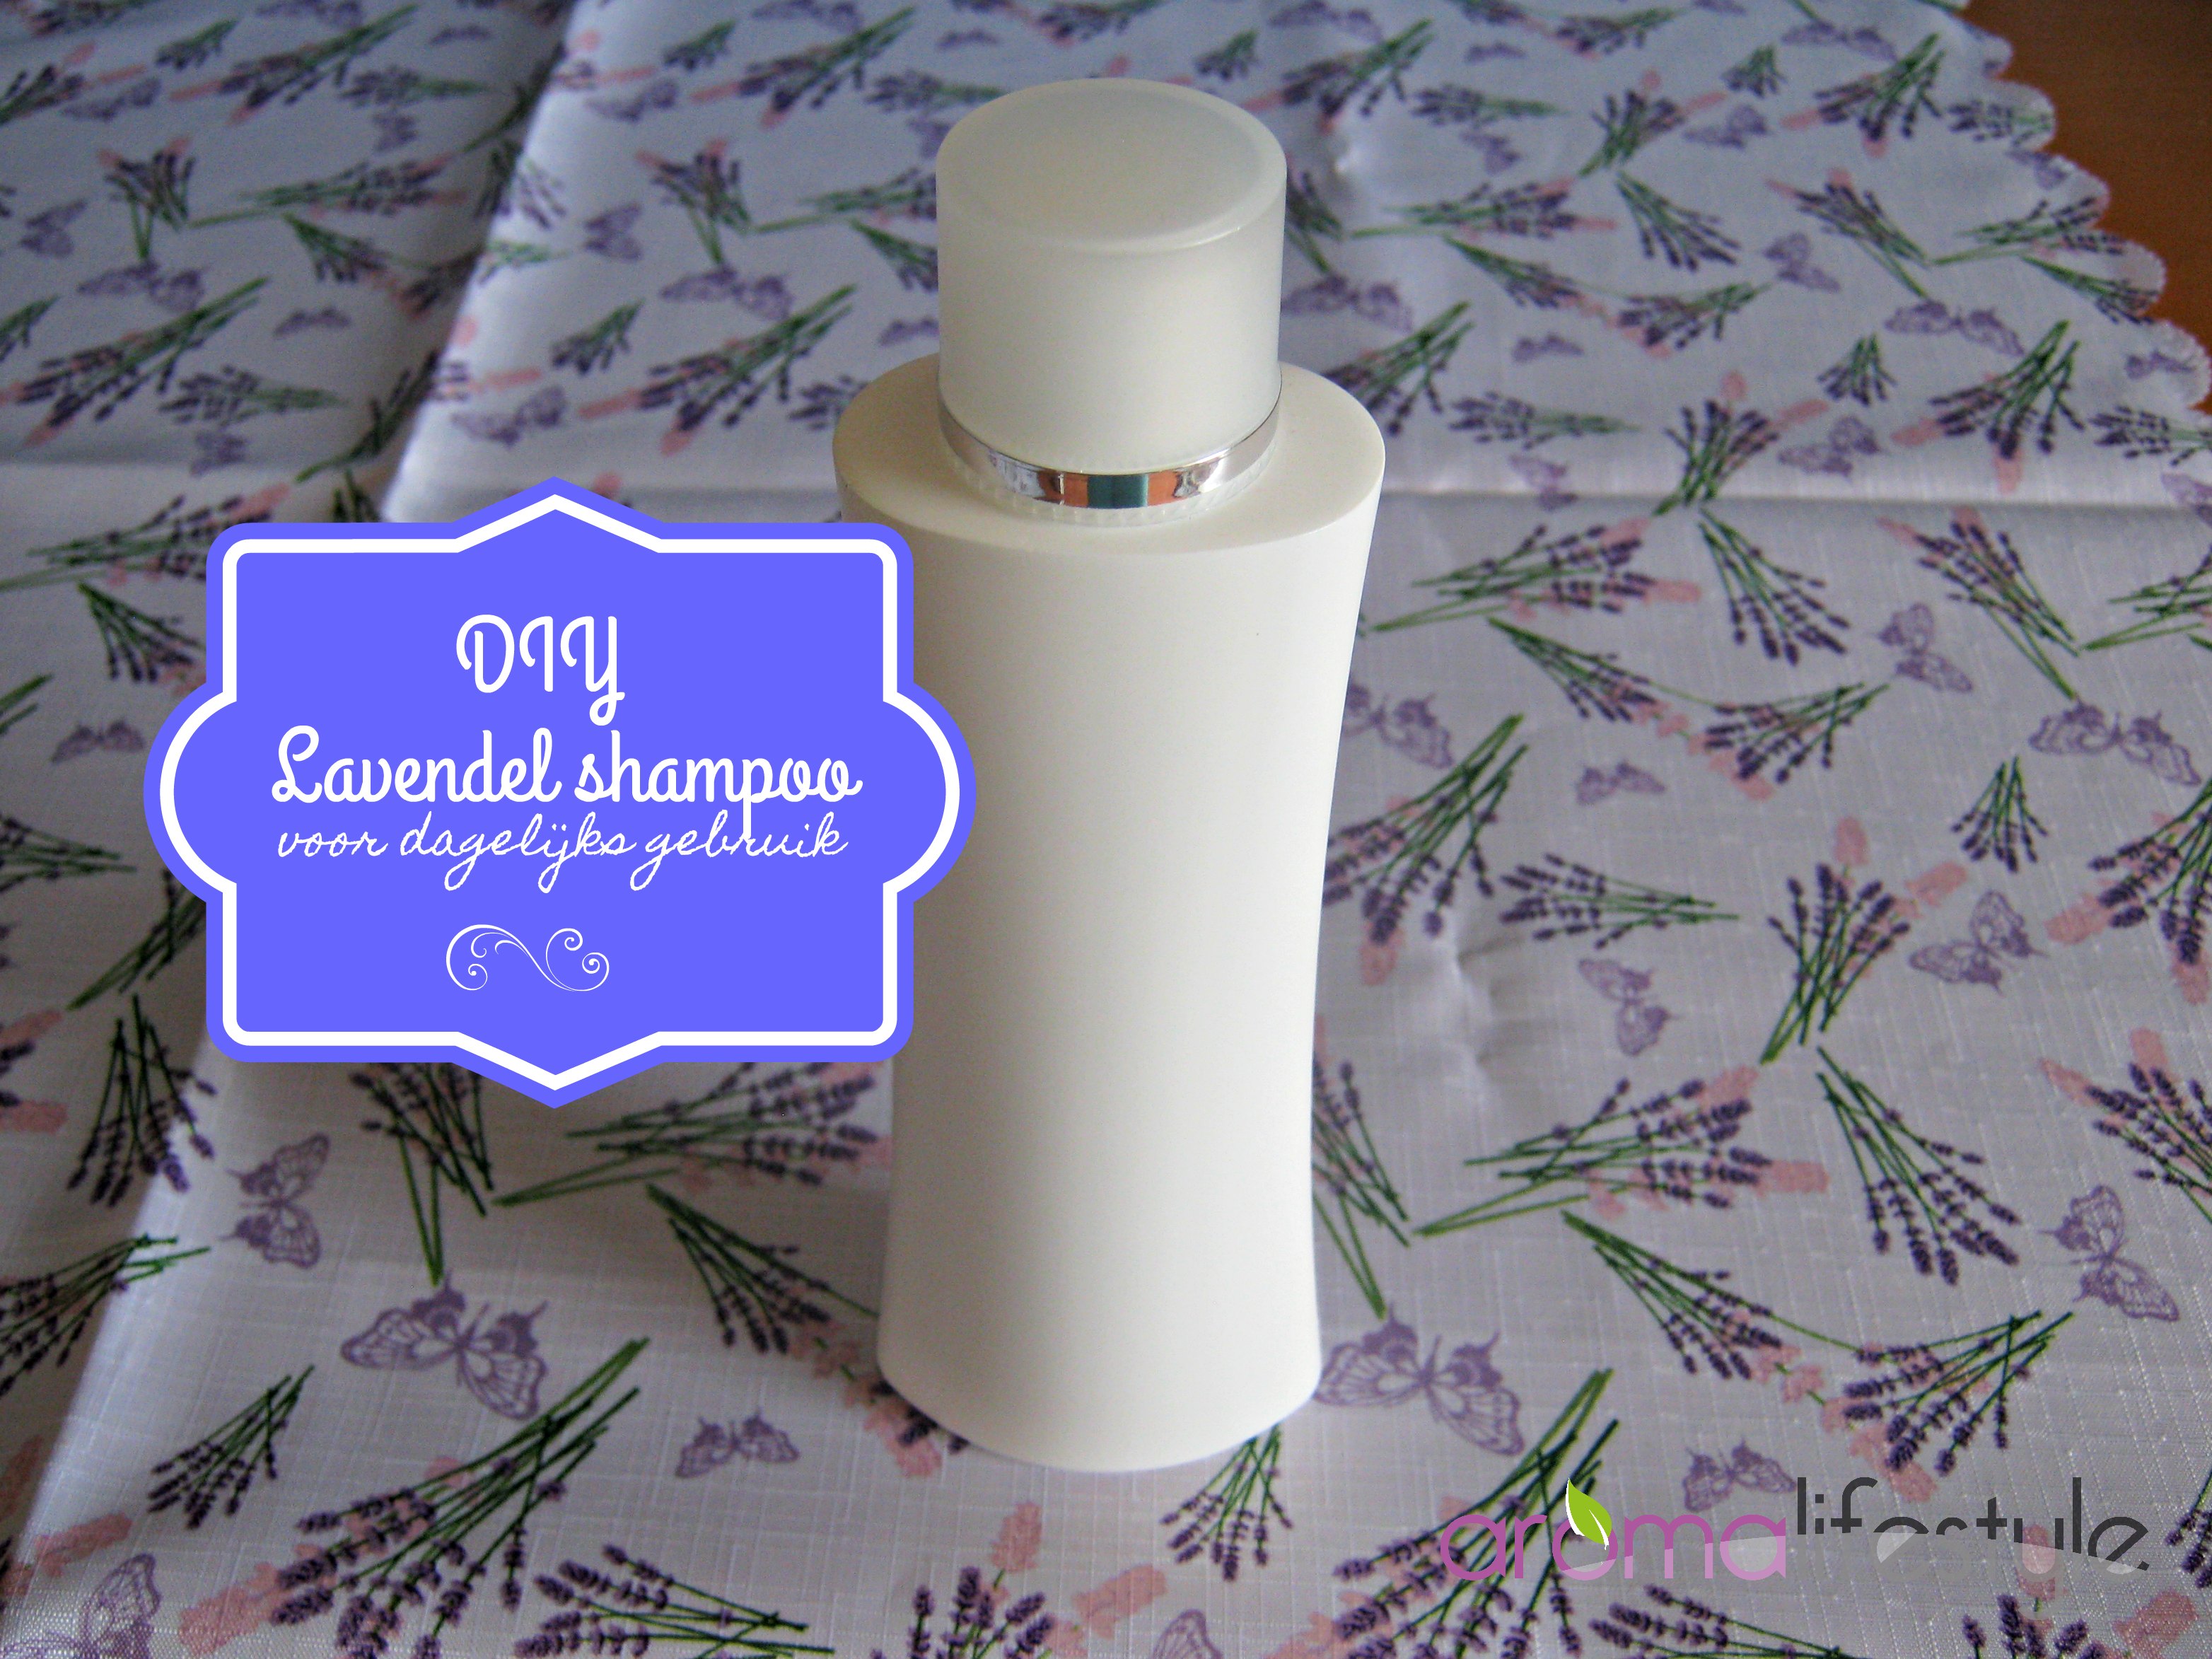 Richtlijnen Fascinerend tv Lavendel shampoo, voor dagelijks gebruik